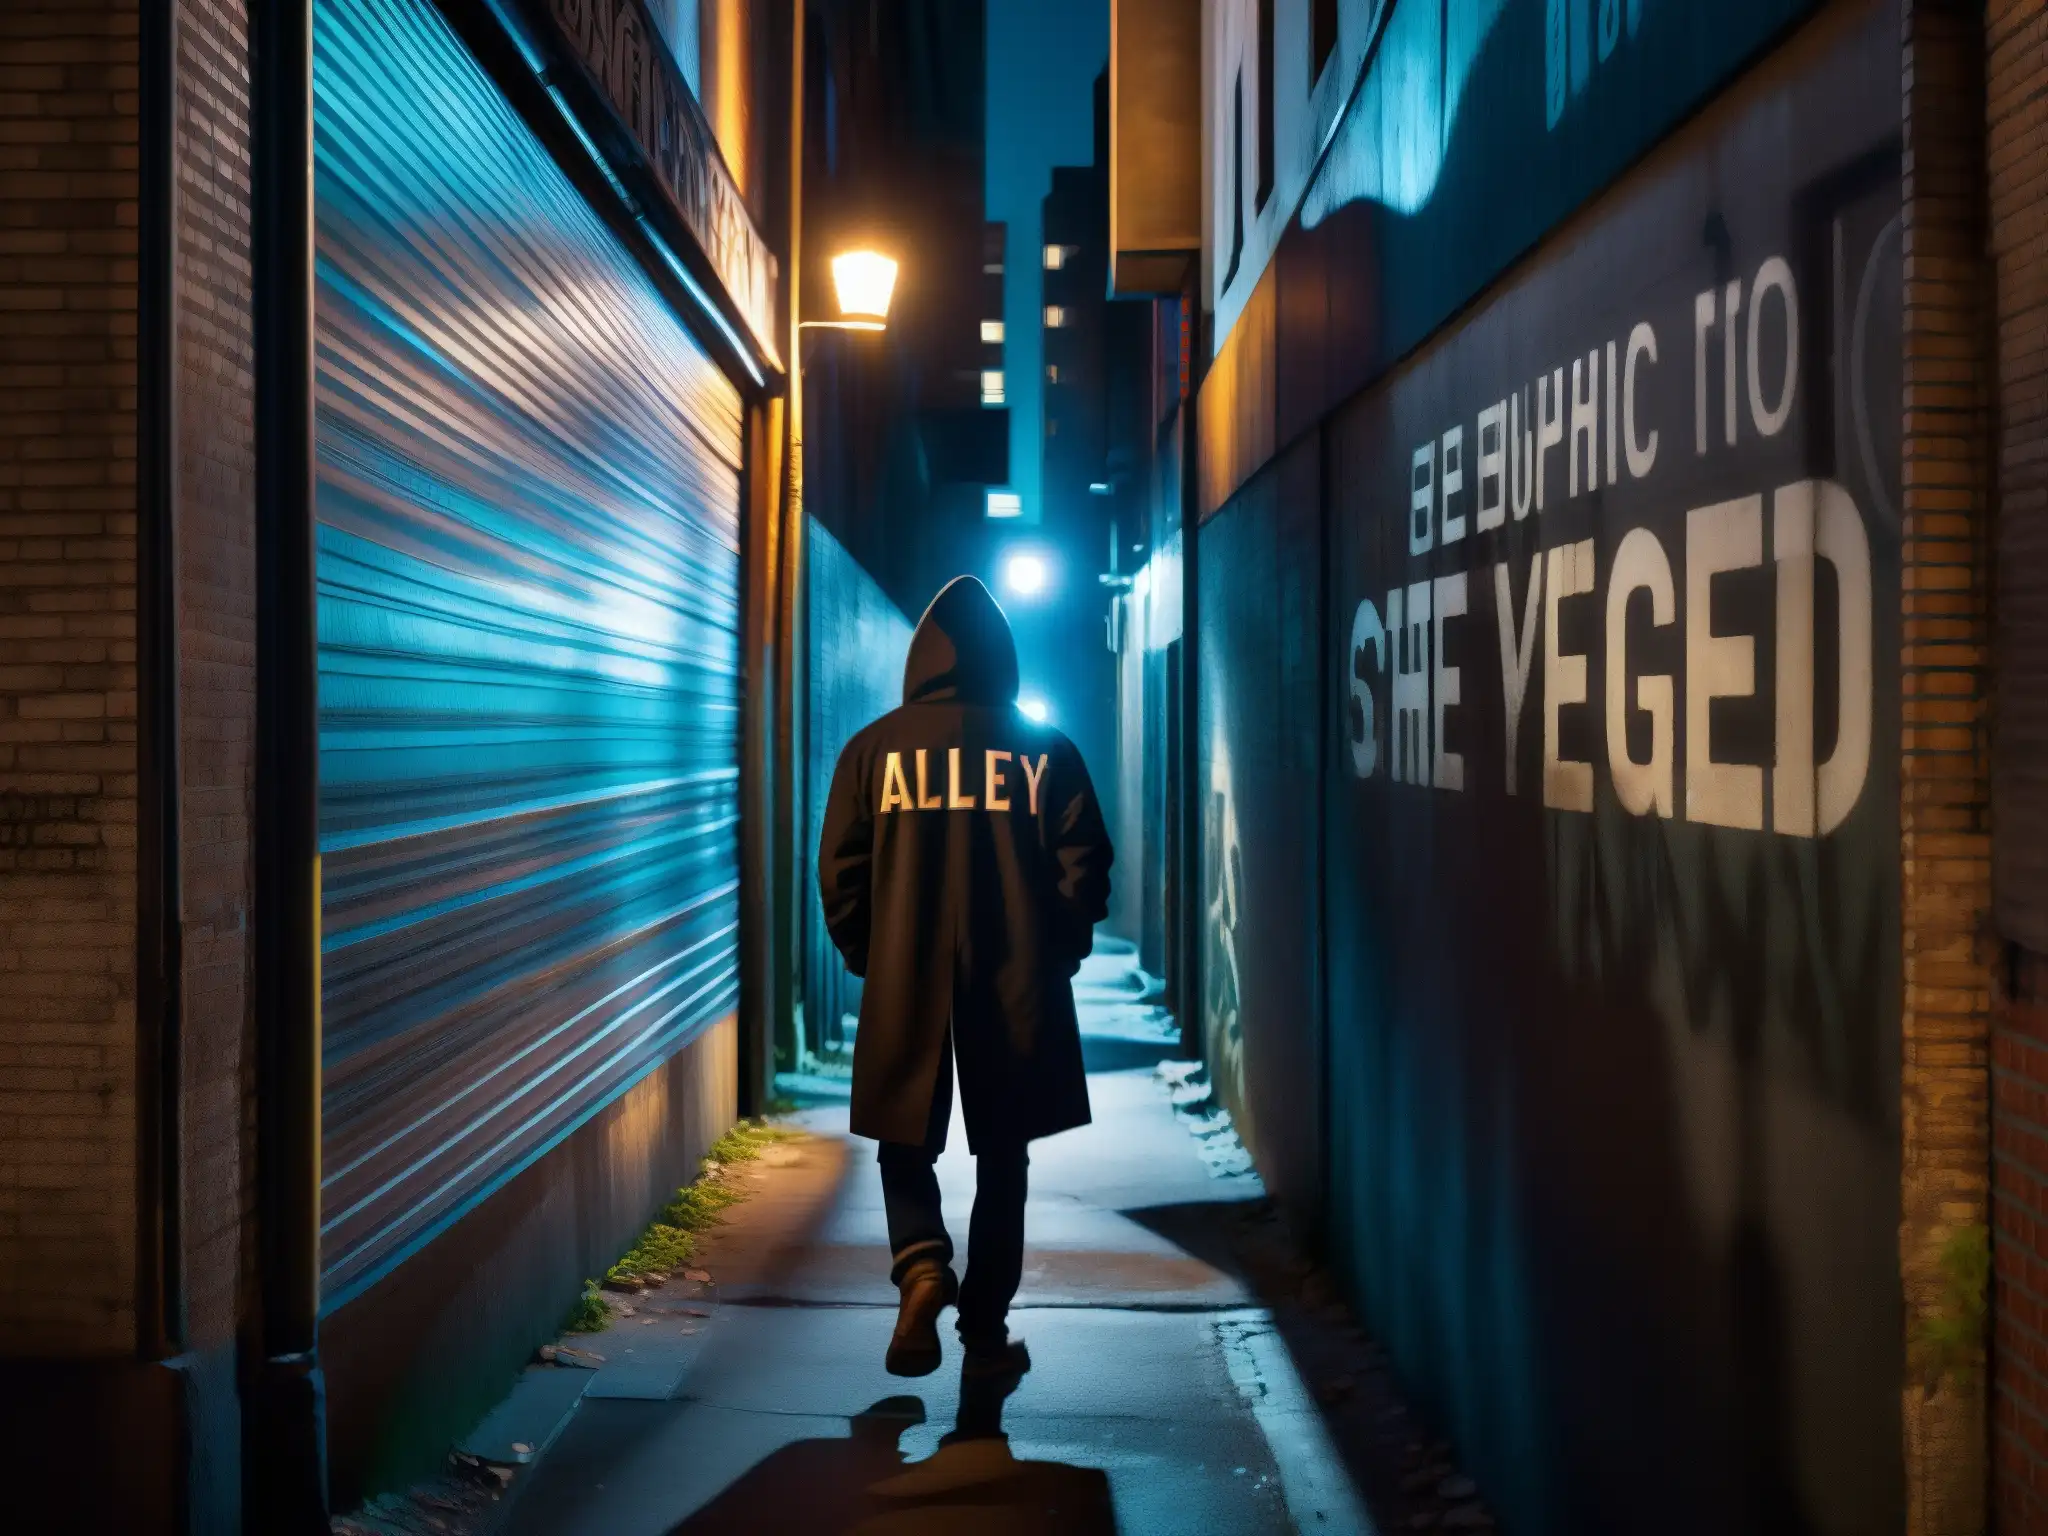 Un callejón urbano sombrío con grafitis y luces titilantes, donde una figura solitaria se aleja, evocando mitos y leyendas urbanas controvertidos